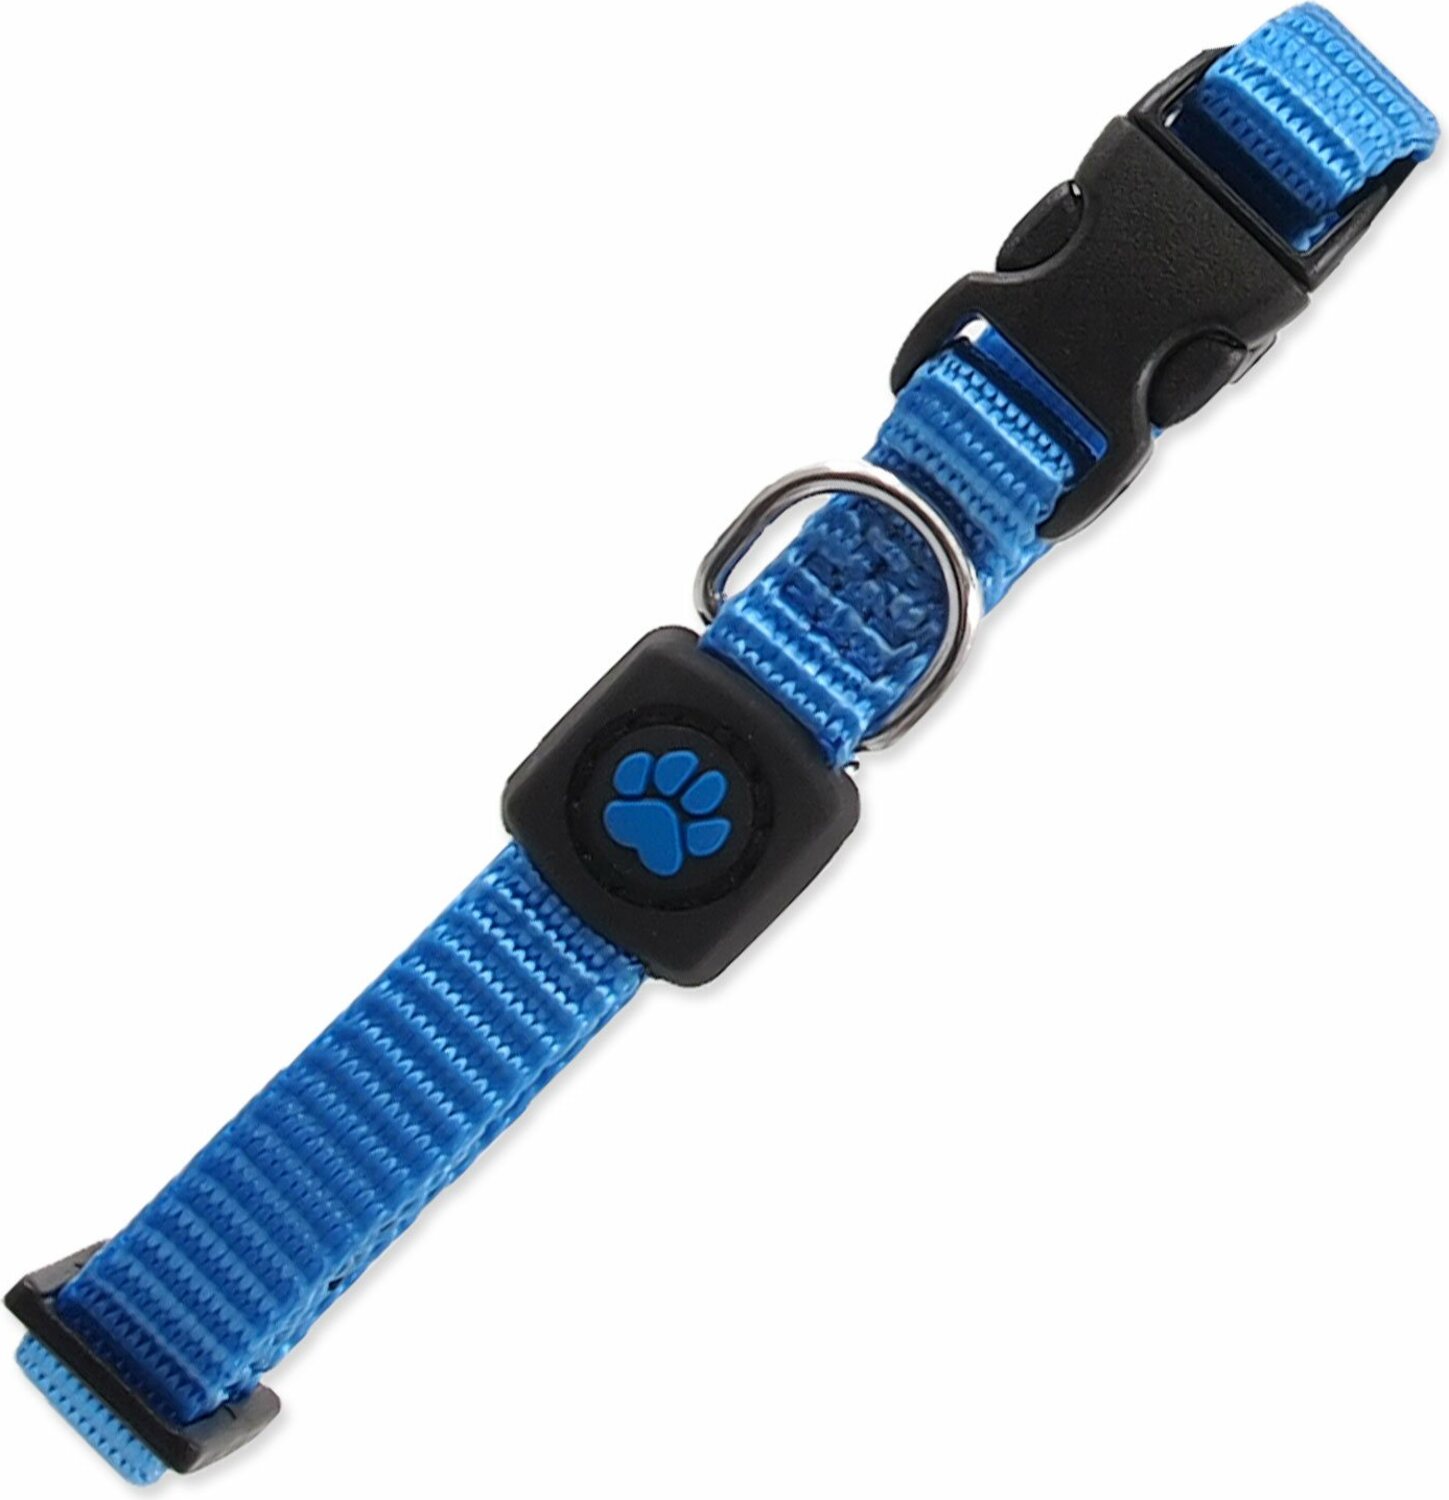 Obojek Active Dog Premium XS modrý 1x21-30cm